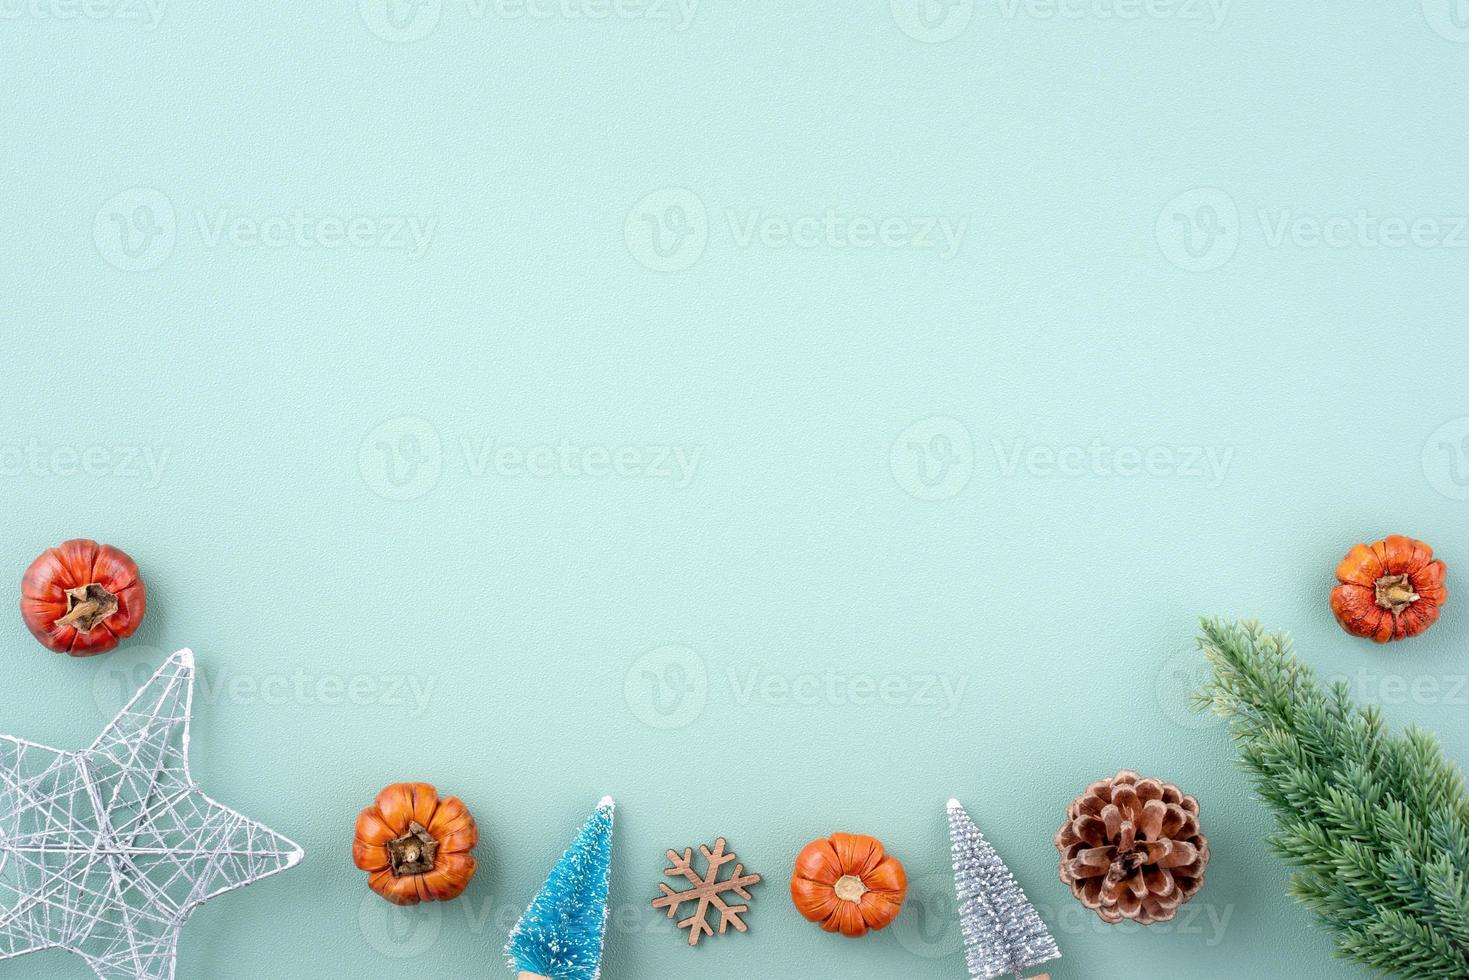 vista superior del fondo de vacaciones de navidad. composición de la decoración de adornos festivos flatlay. foto